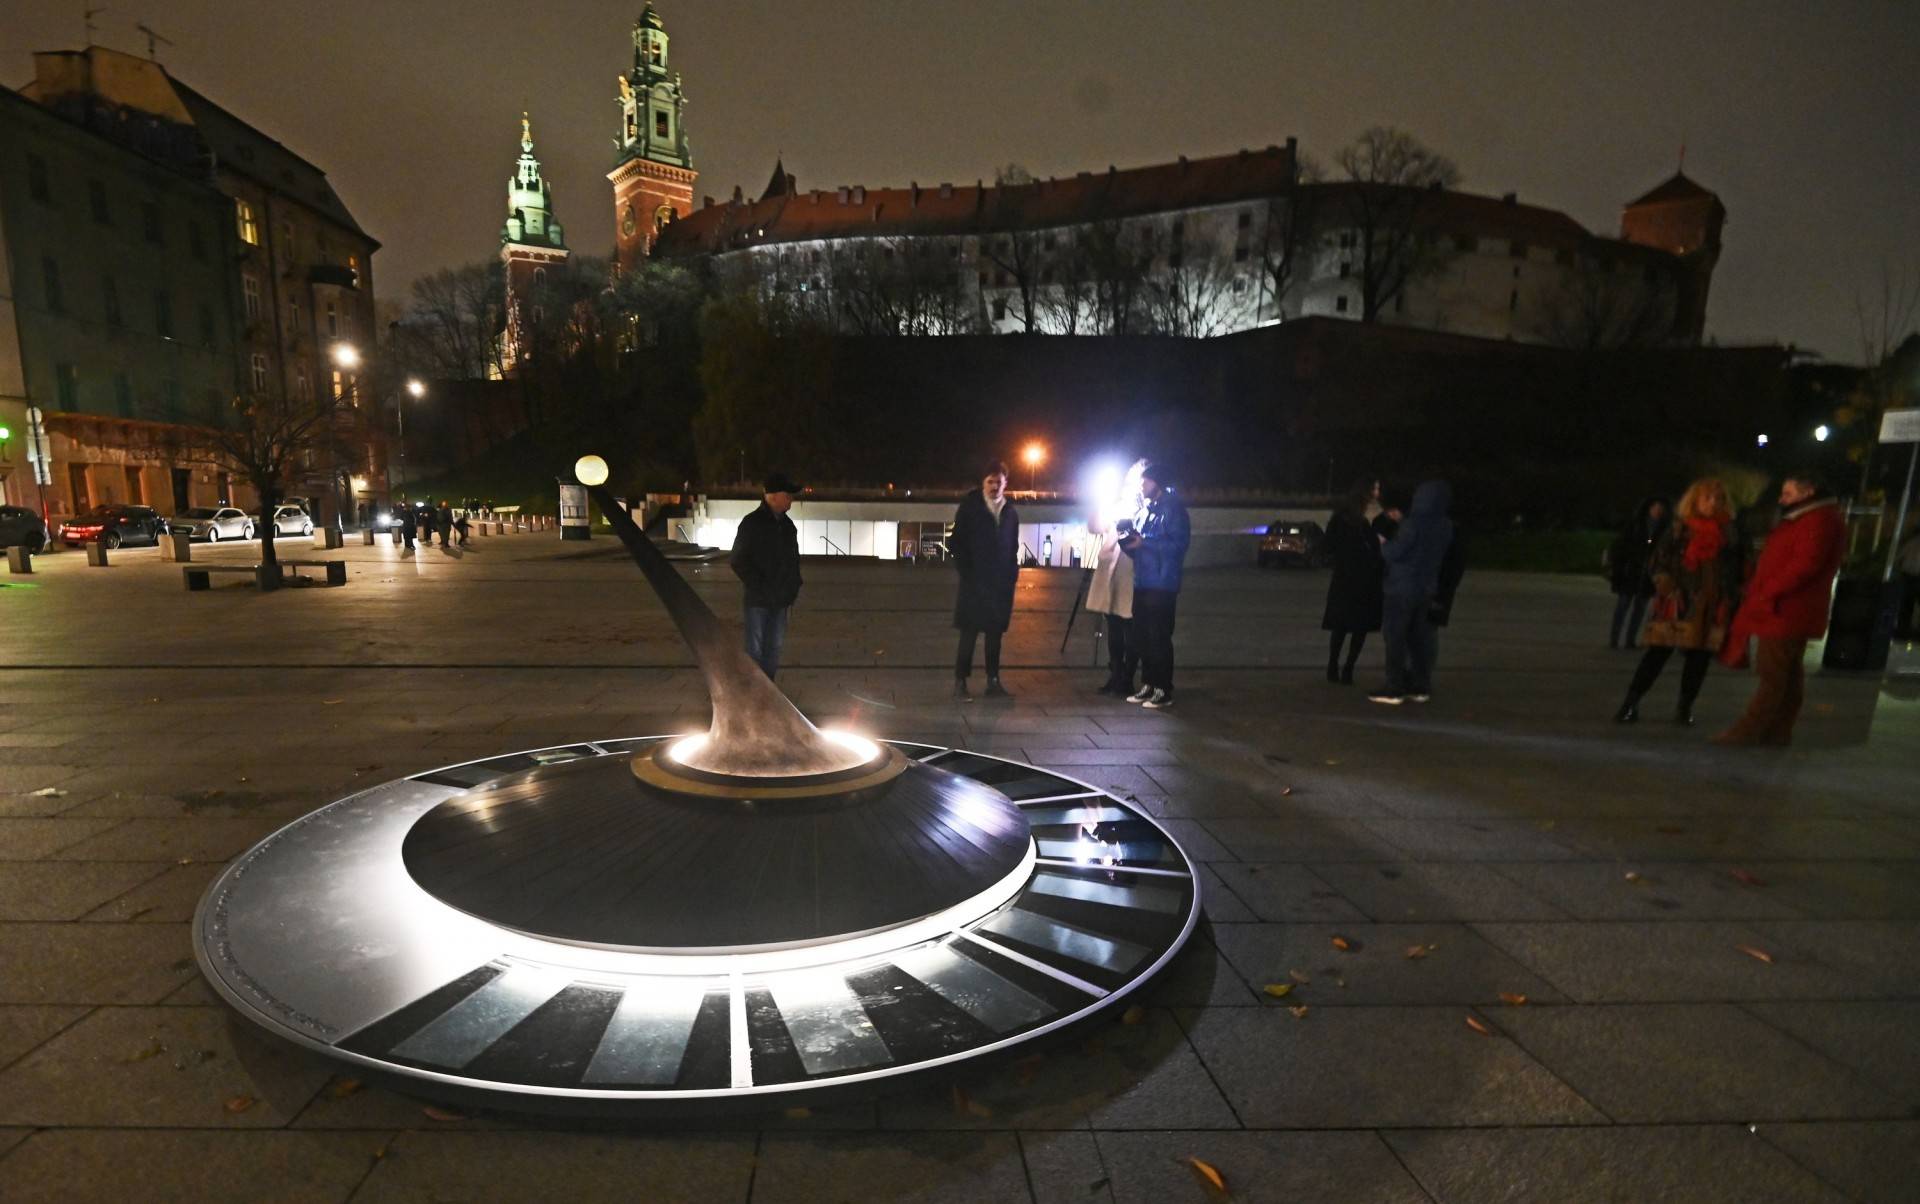 Wyjątkowy zegar słoneczny stanął pod Wawelem, działa również w nocy